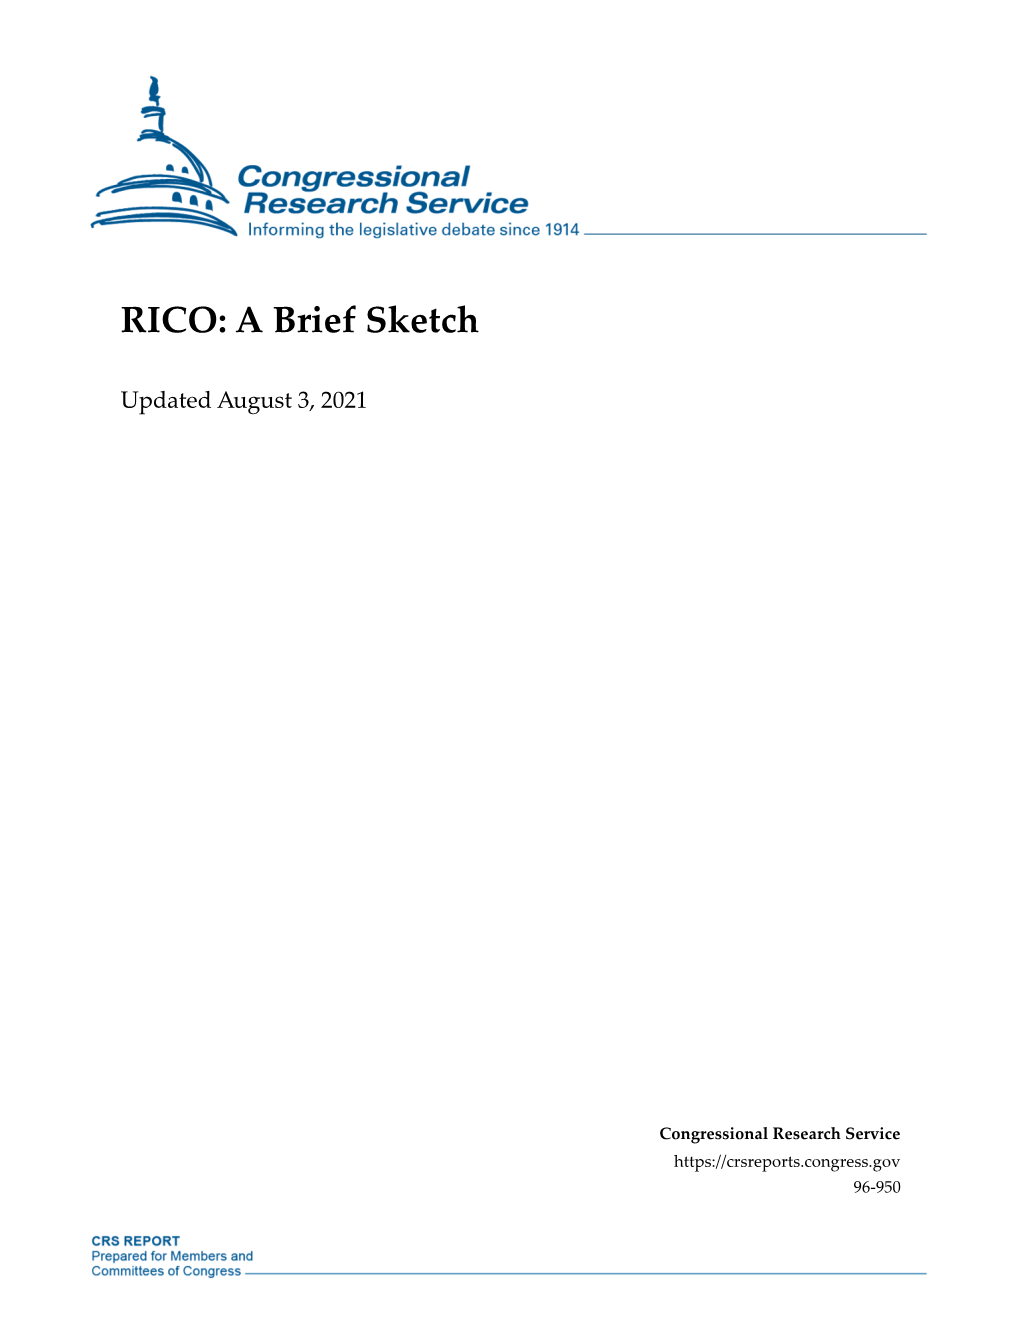 RICO: a Brief Sketch